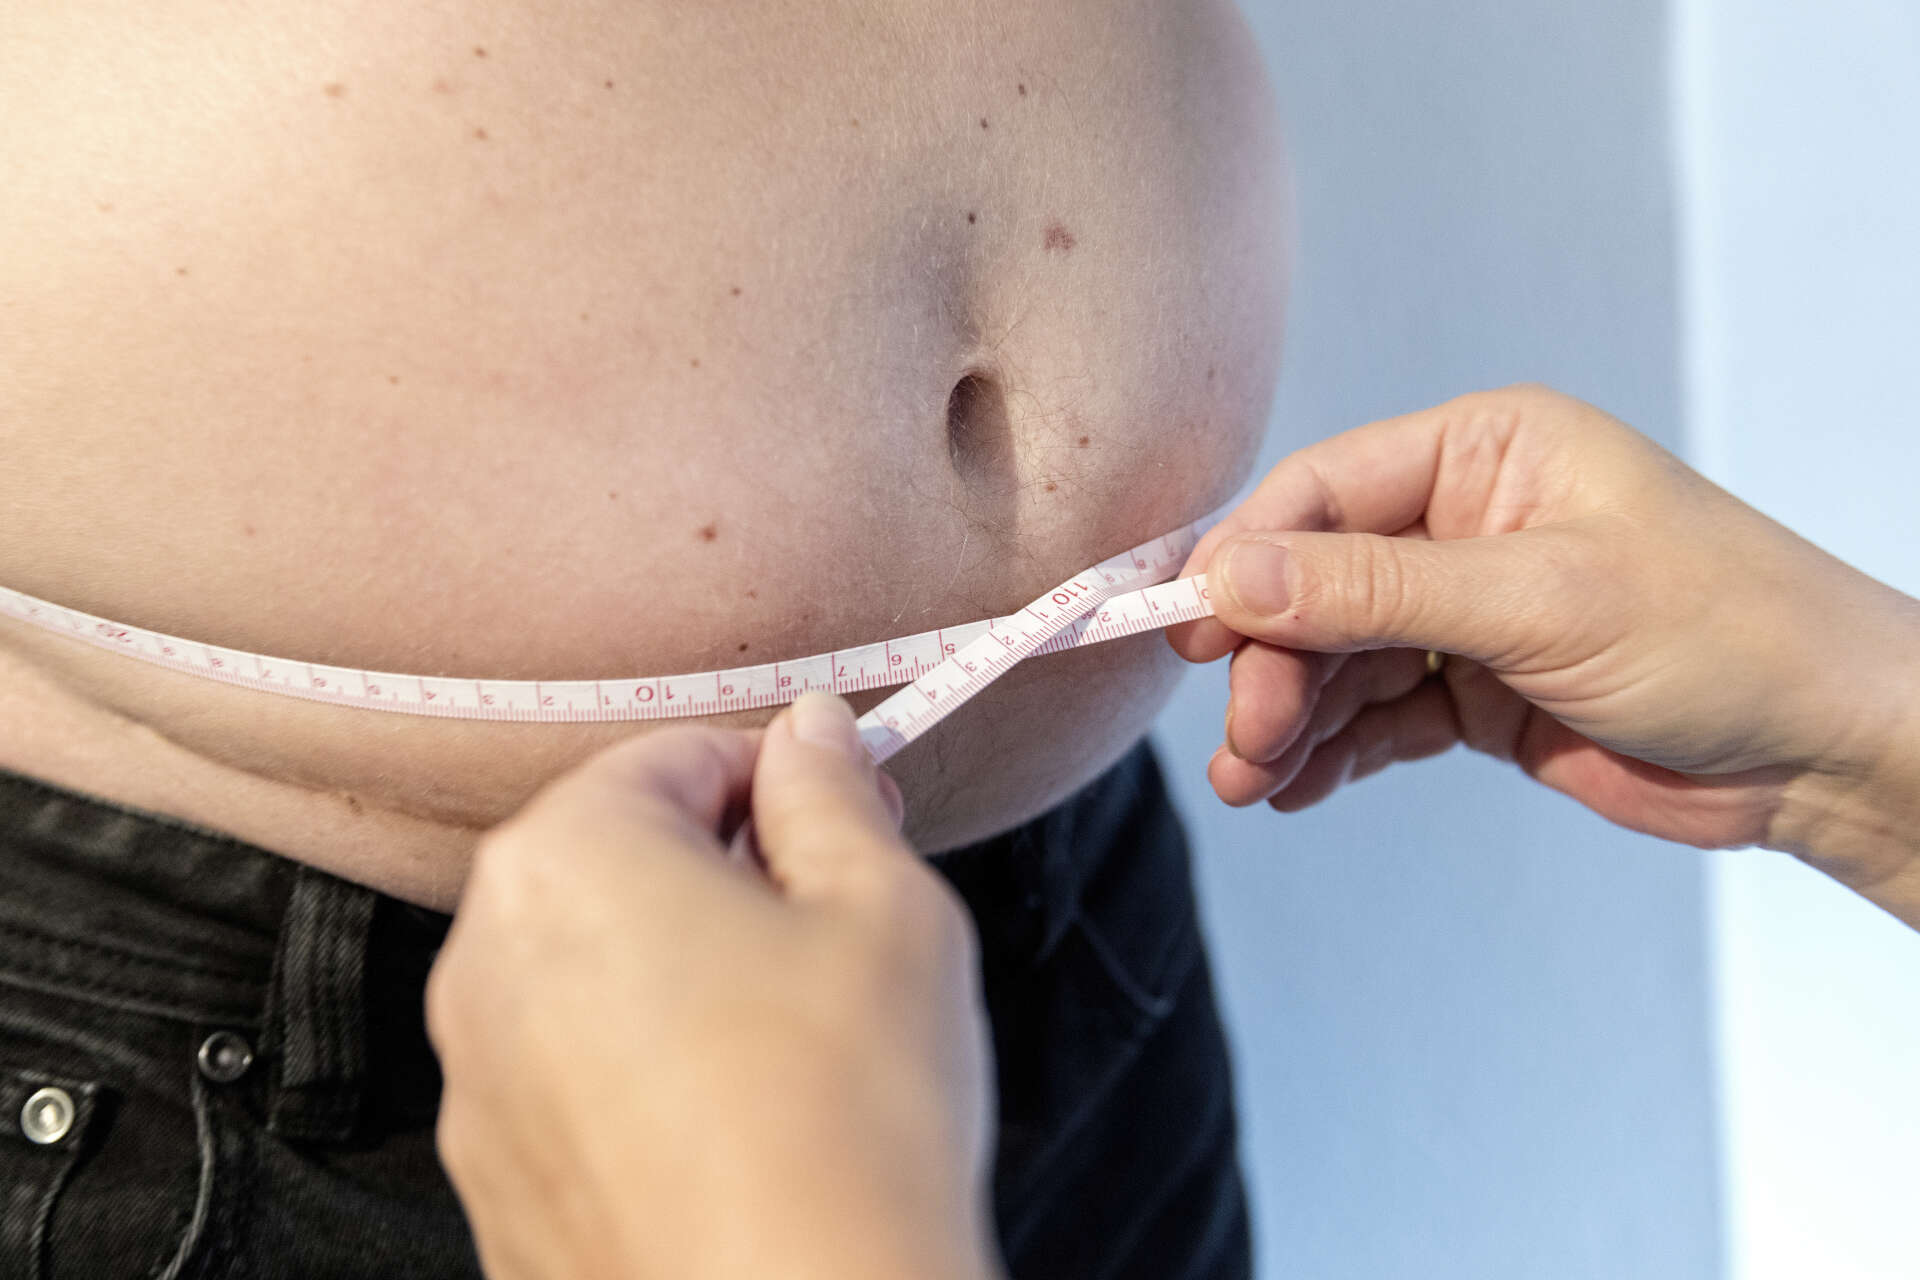 Män med övervikt när de mönstrade i tonåren hade ökad risk att få svår covid-19, visar en stor svensk studie. Arkivbild.